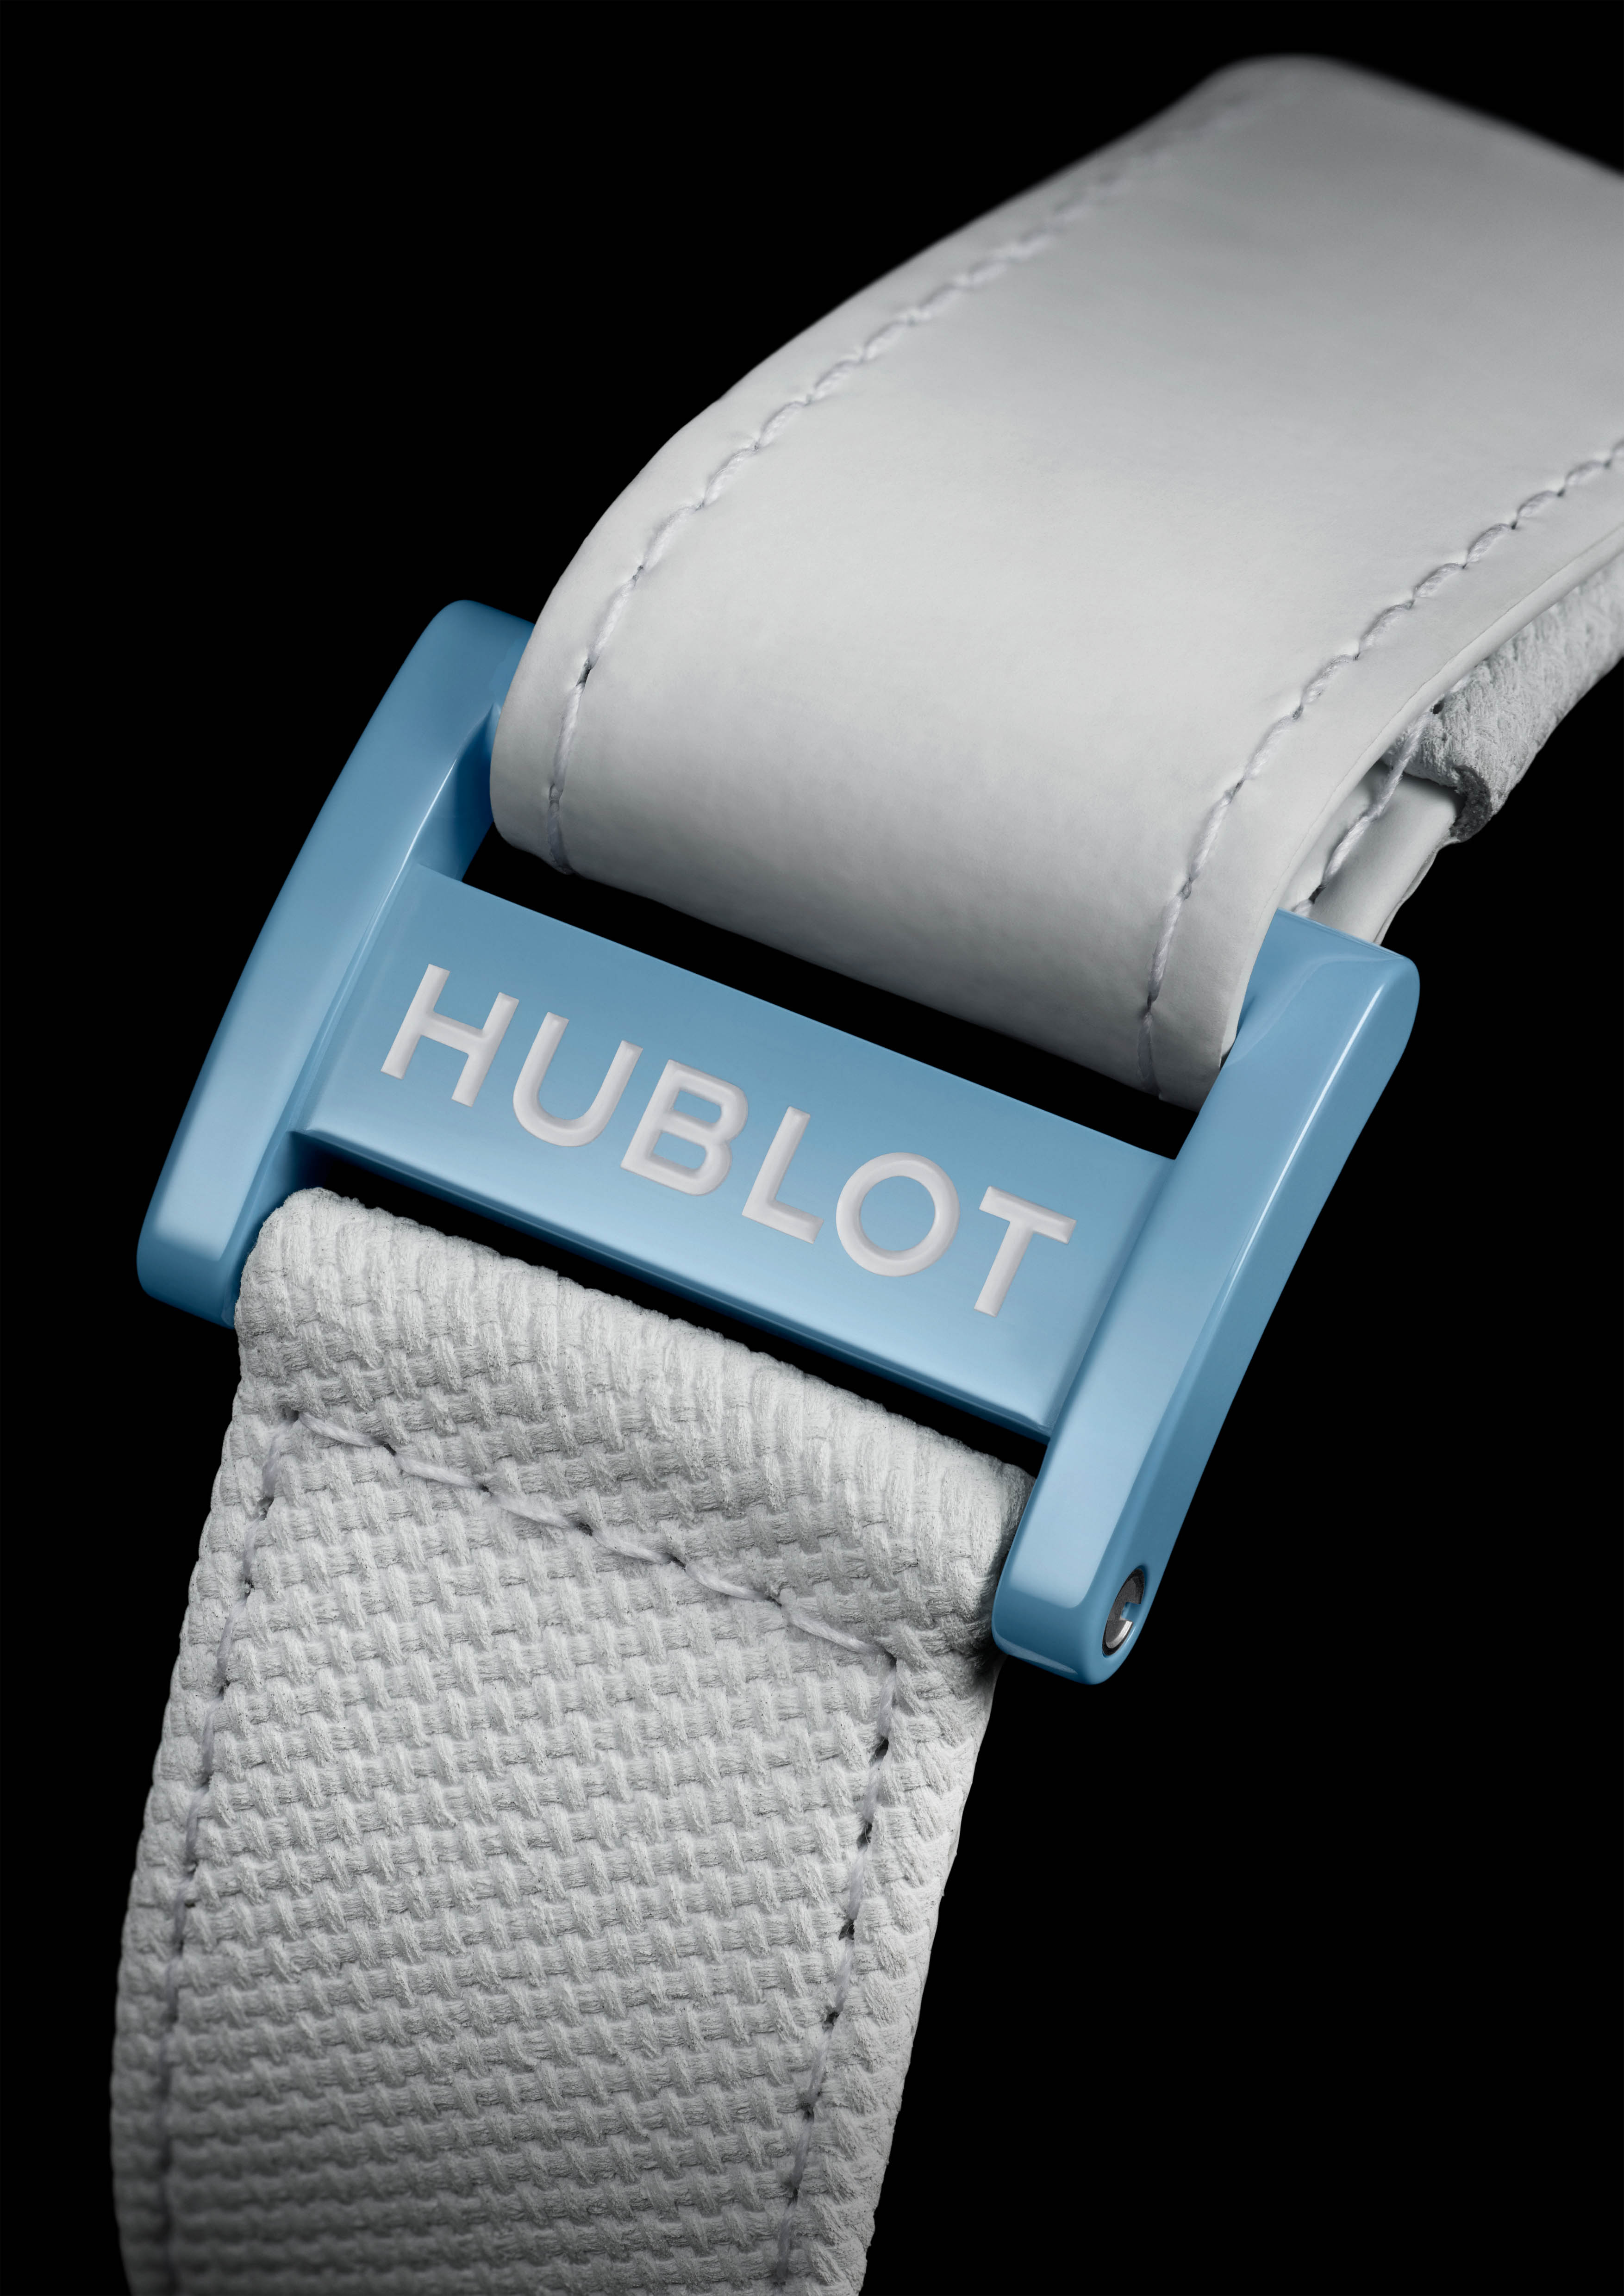 Hublot выпустил лимитированную модель часов в голубом цвете (фото 3)